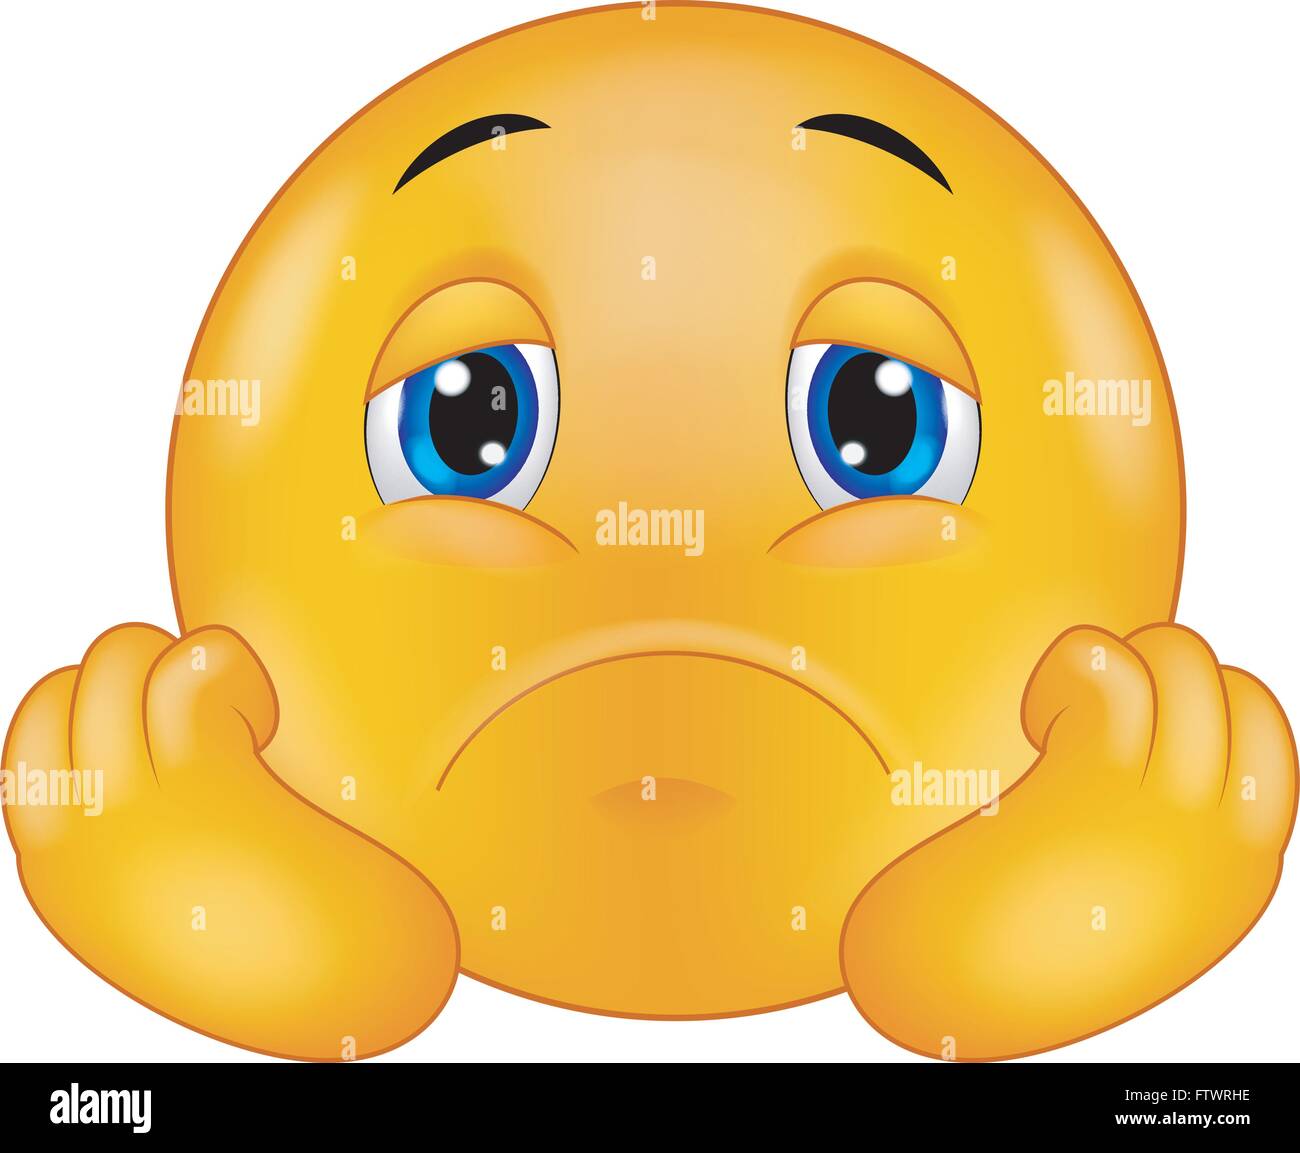 Sad smiley emoticon Stock Vector Image & Art - Alamy